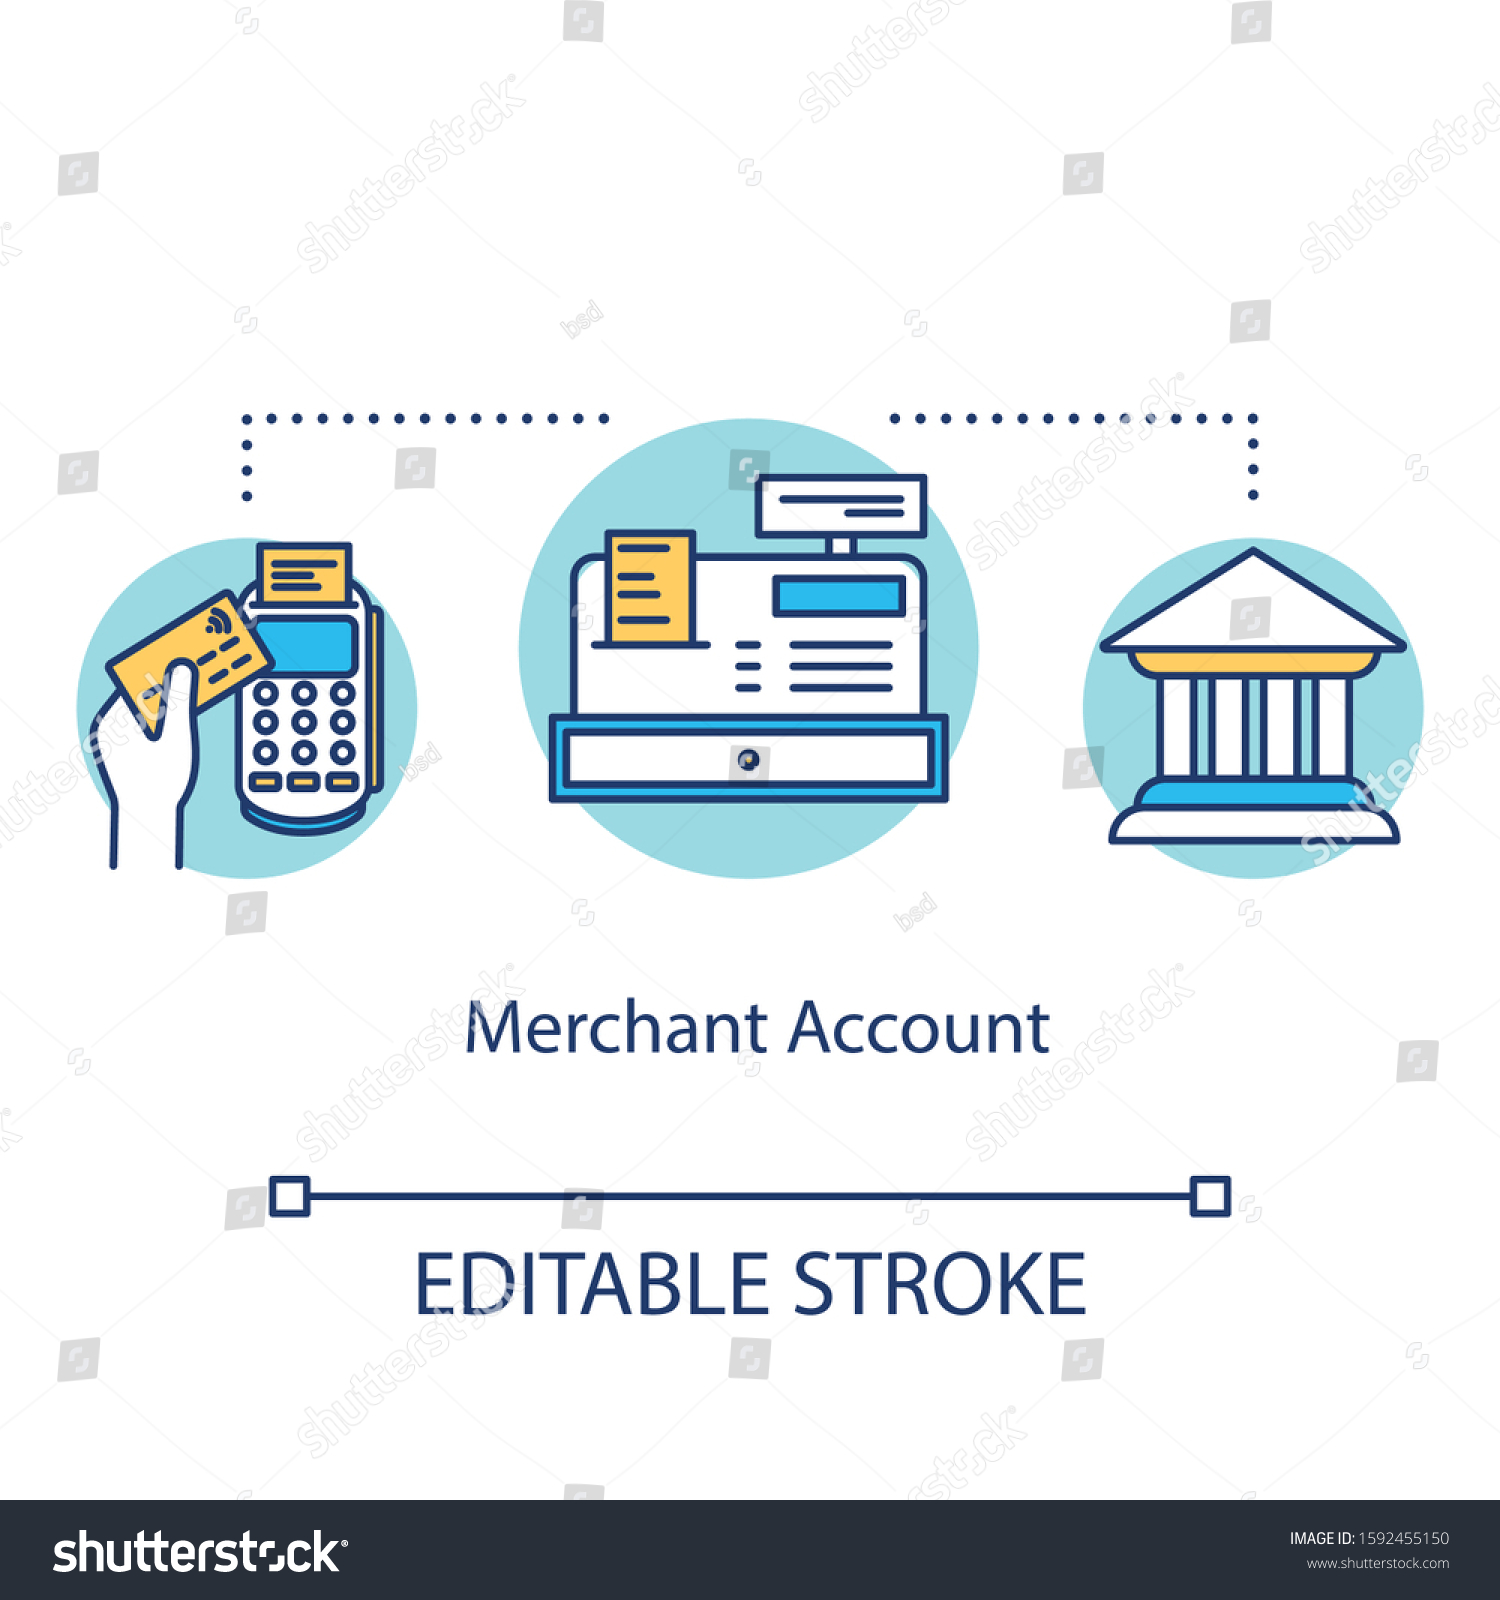 merchant account icon